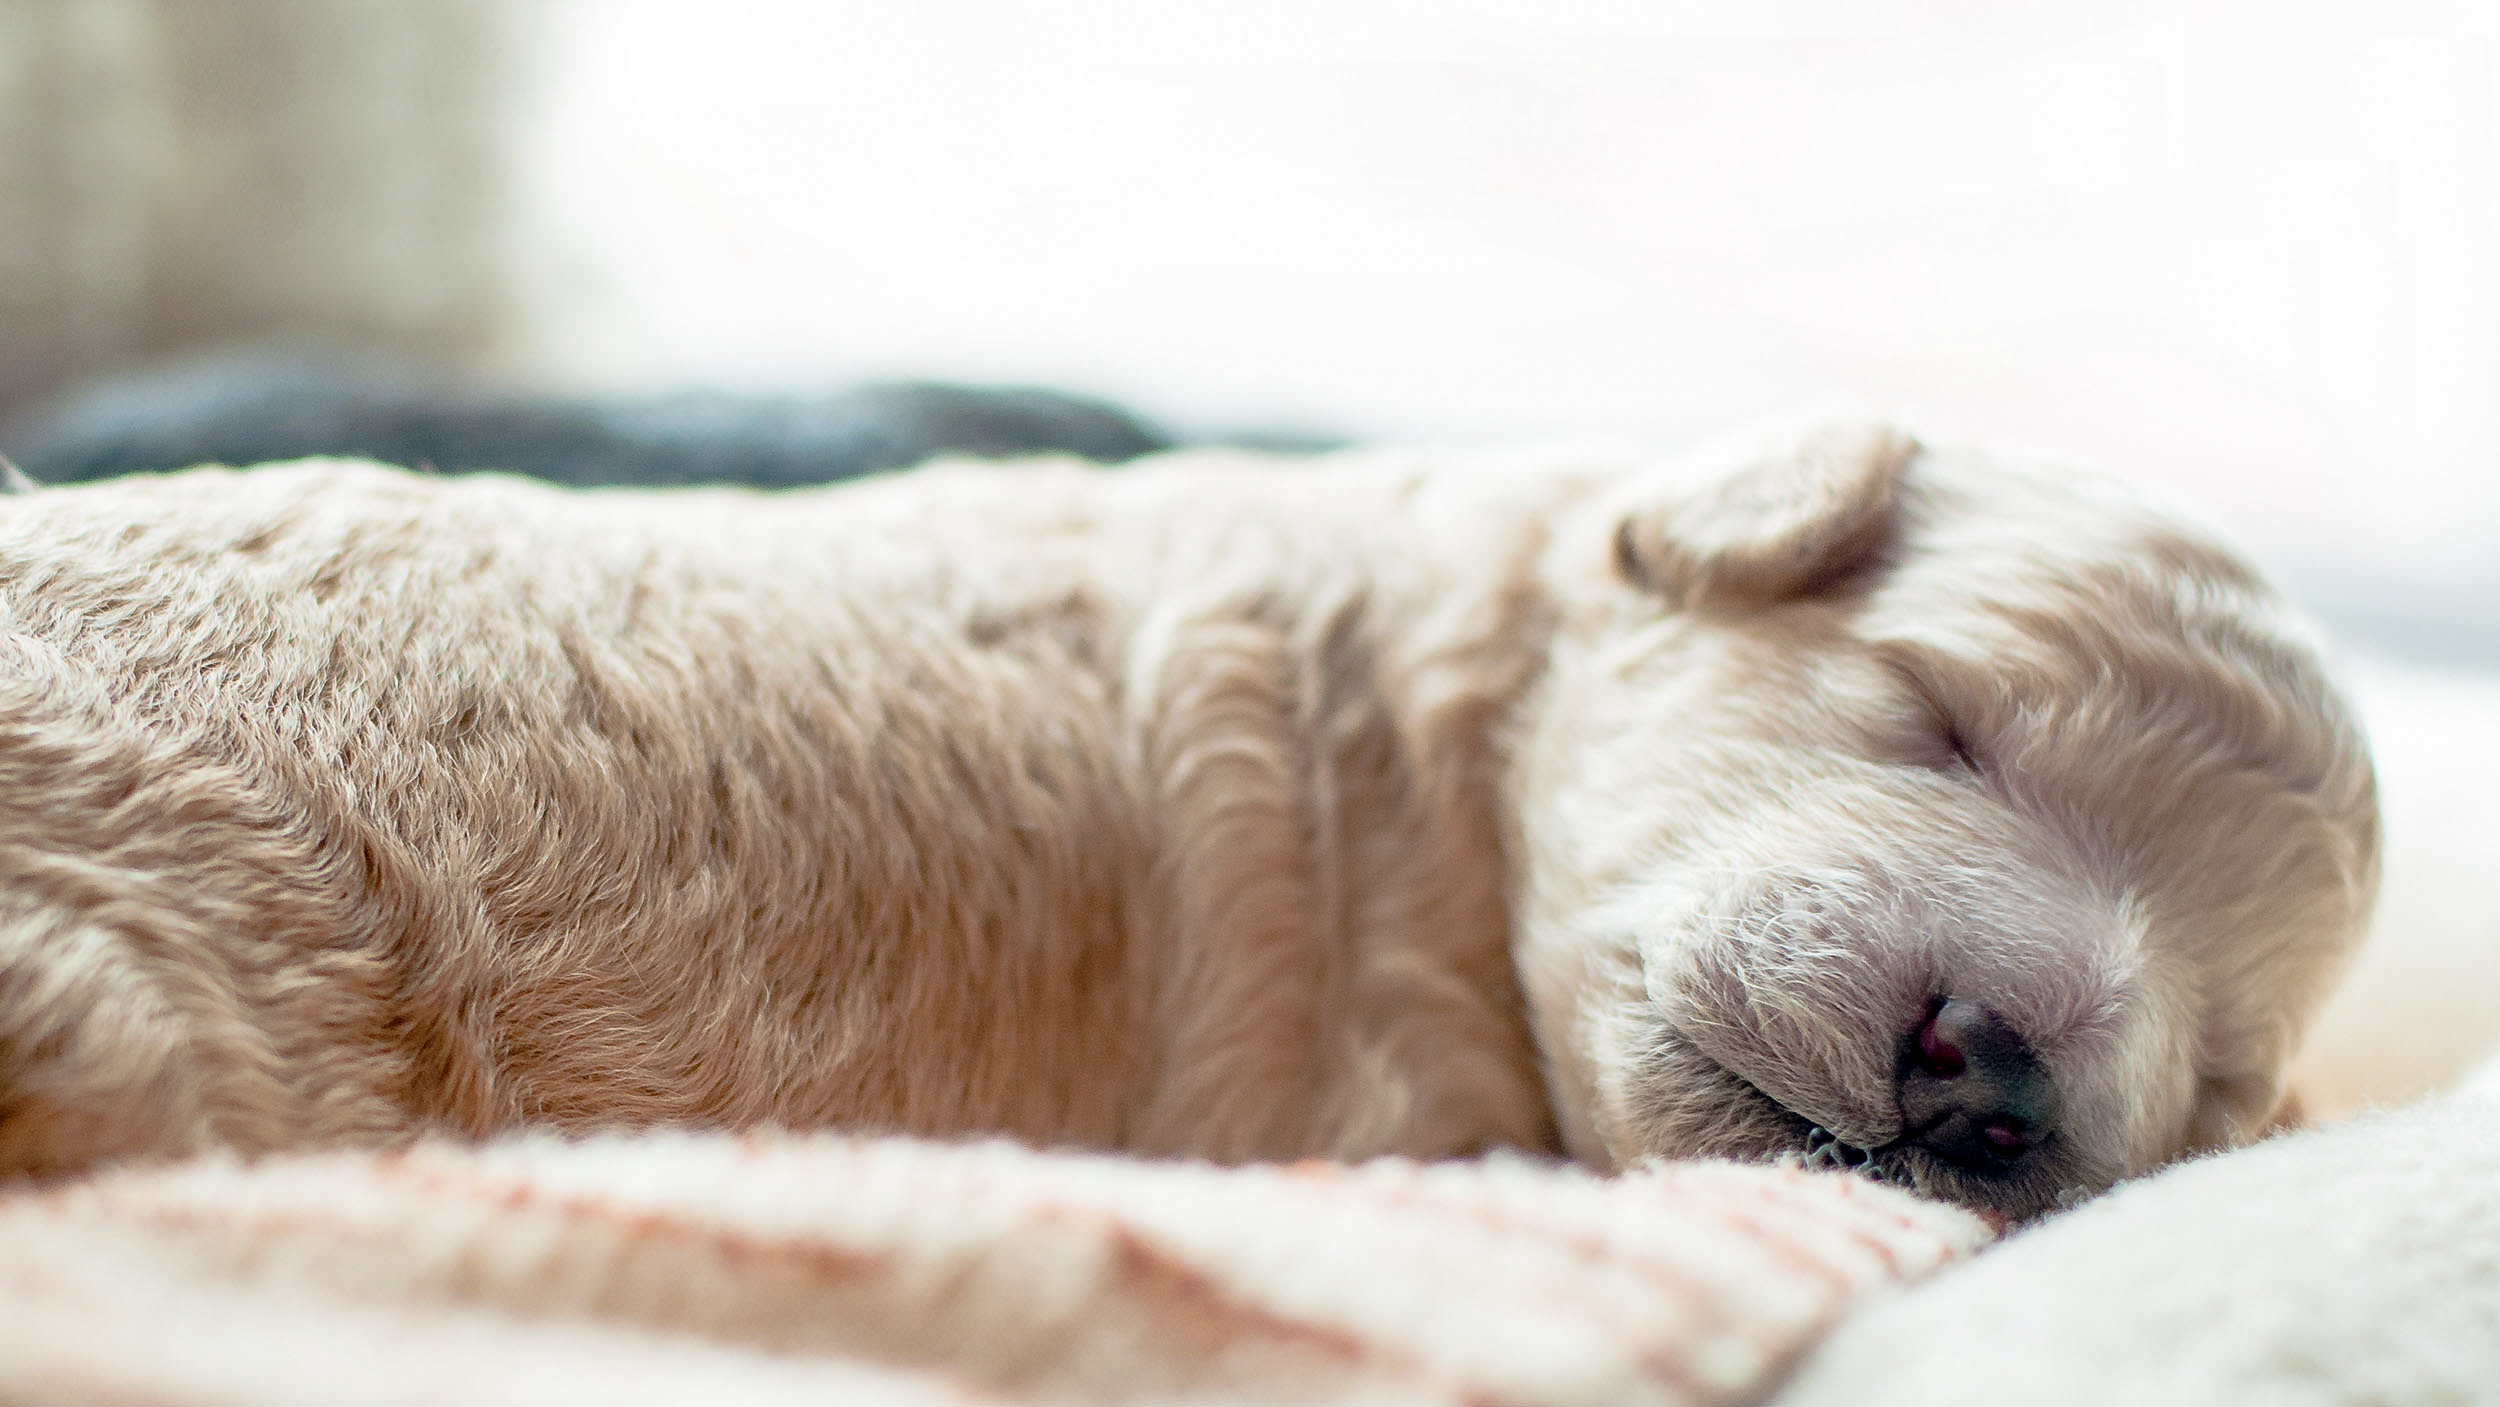 Liggende pasgeboren pup slapend op een deken.